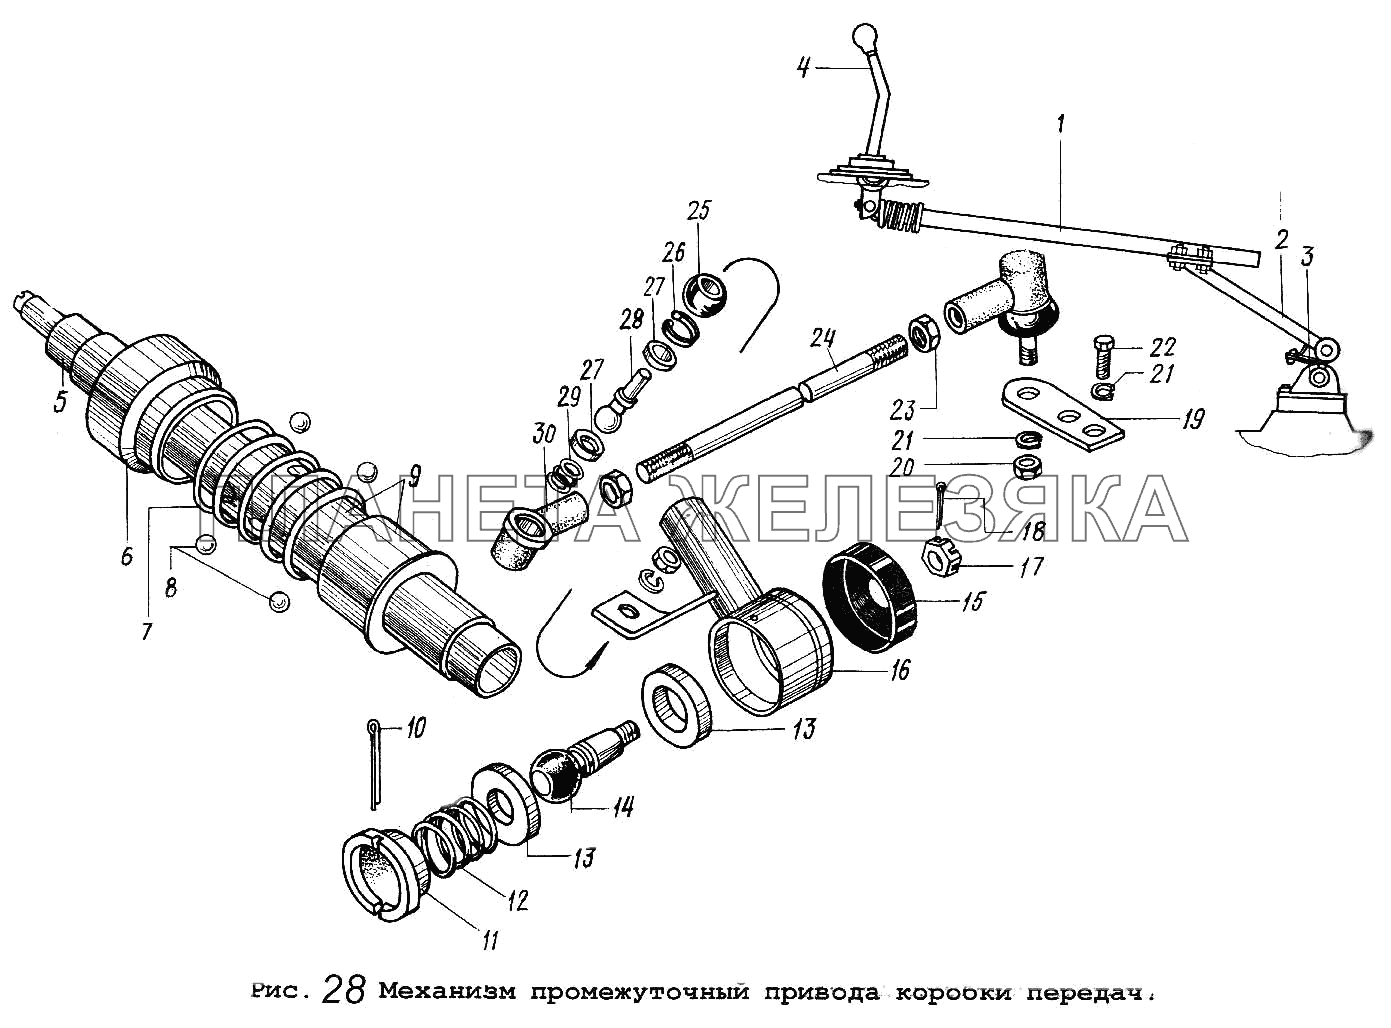 Механизм промежуточный привода коробки передач МАЗ-5337